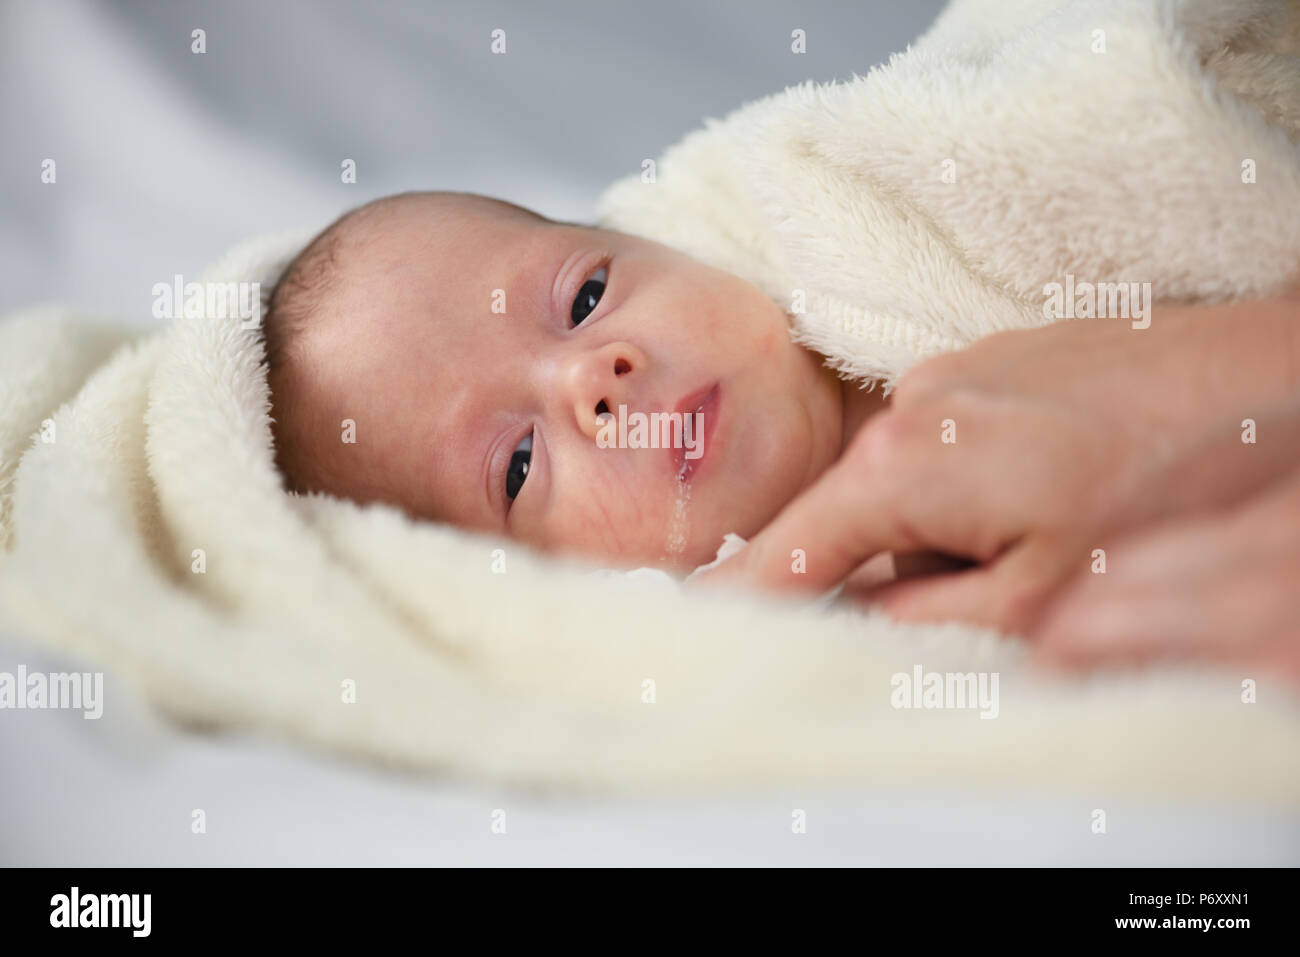 Bebé Recién Nacido La Leche De La Madre Fotos, retratos, imágenes y  fotografía de archivo libres de derecho. Image 22627466